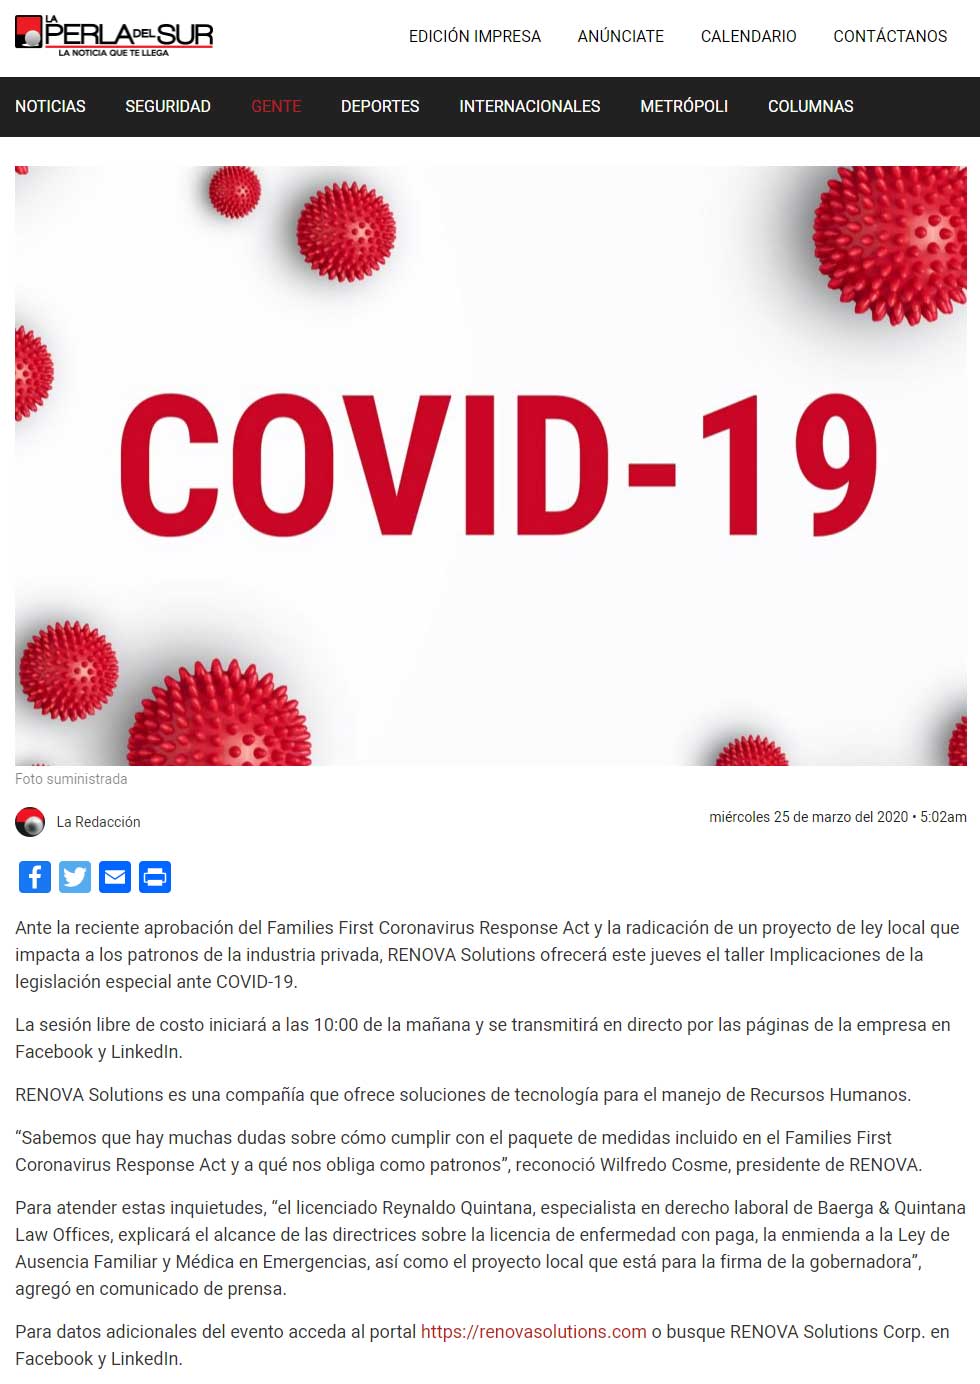 Atención patronos: ofrecen taller en línea sobre implicaciones de legislación por el COVID-19